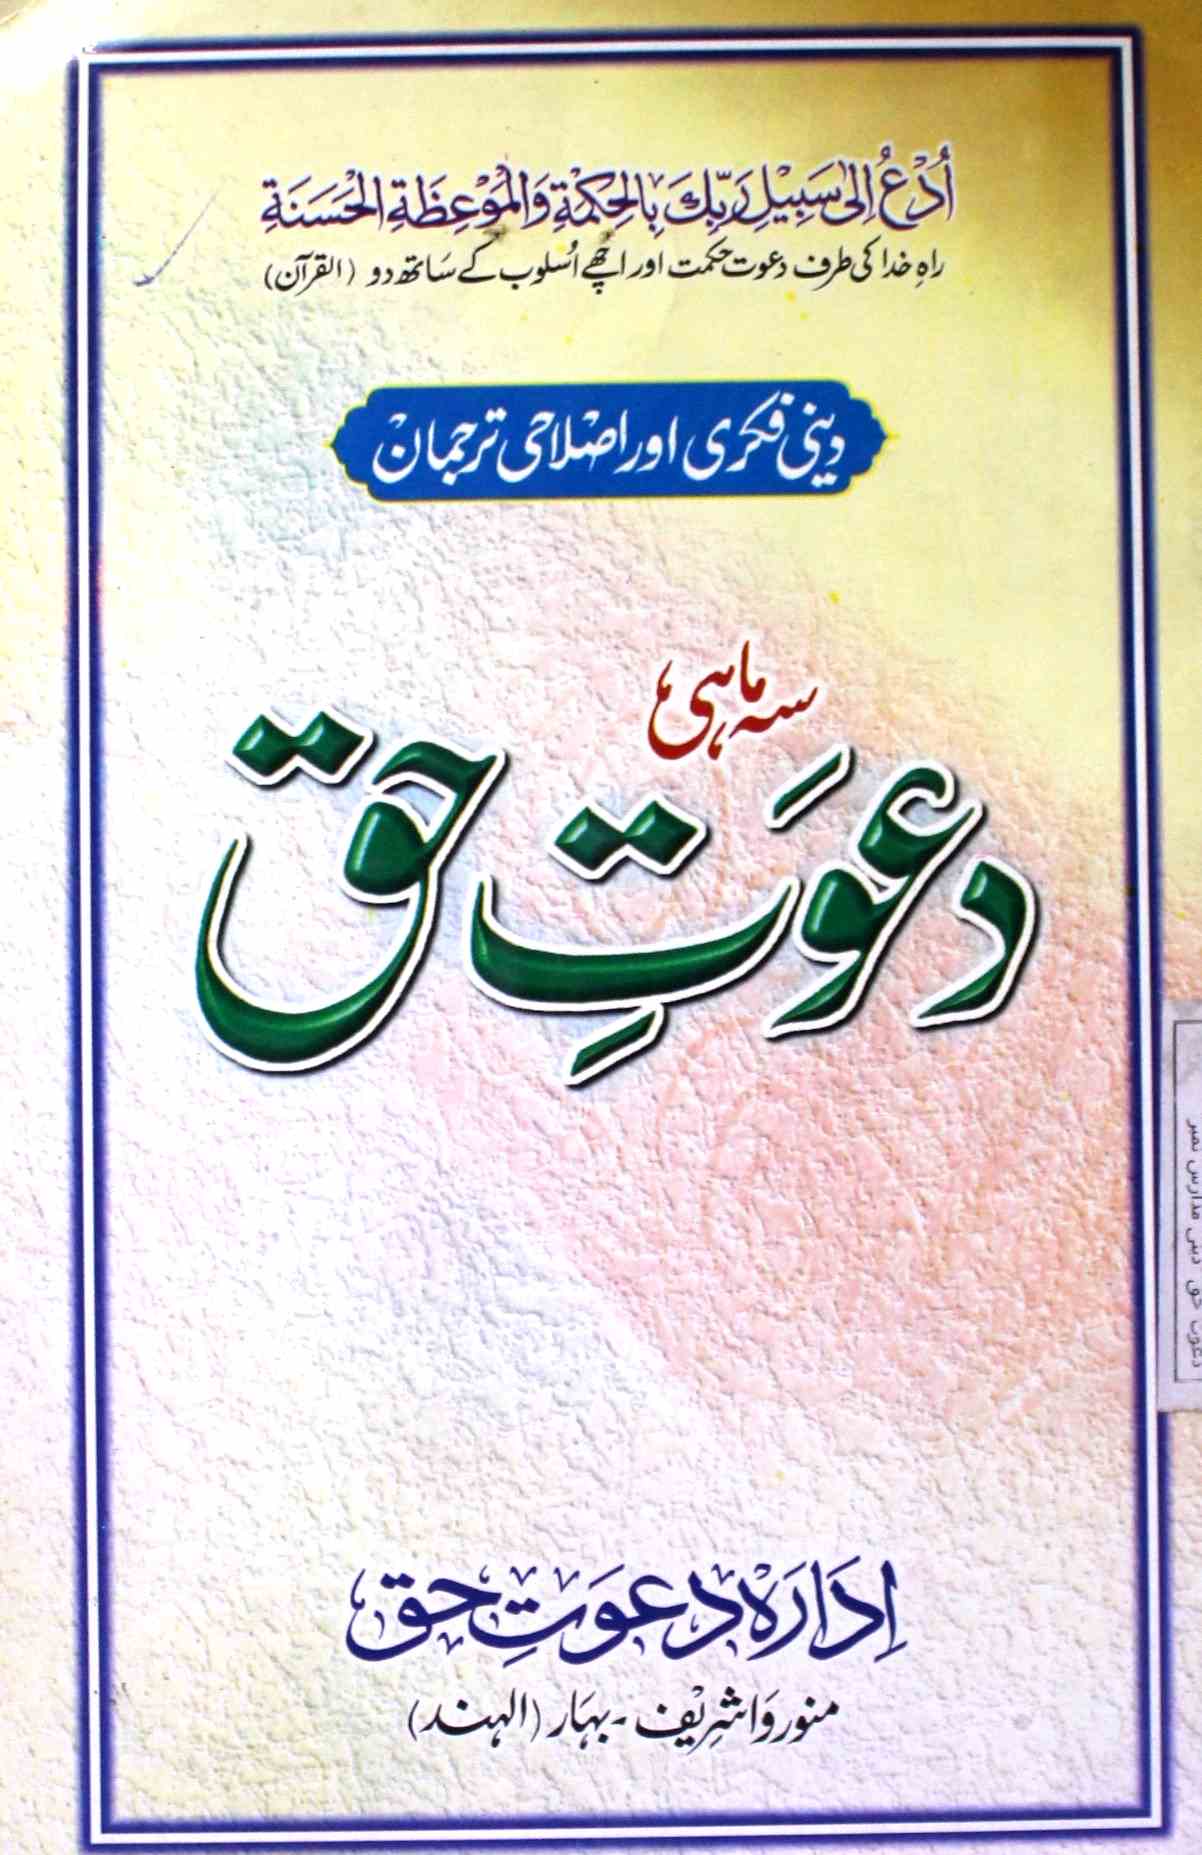 دعوت حق- Magazine by ادارہ دعوت حق، سمستی پور 